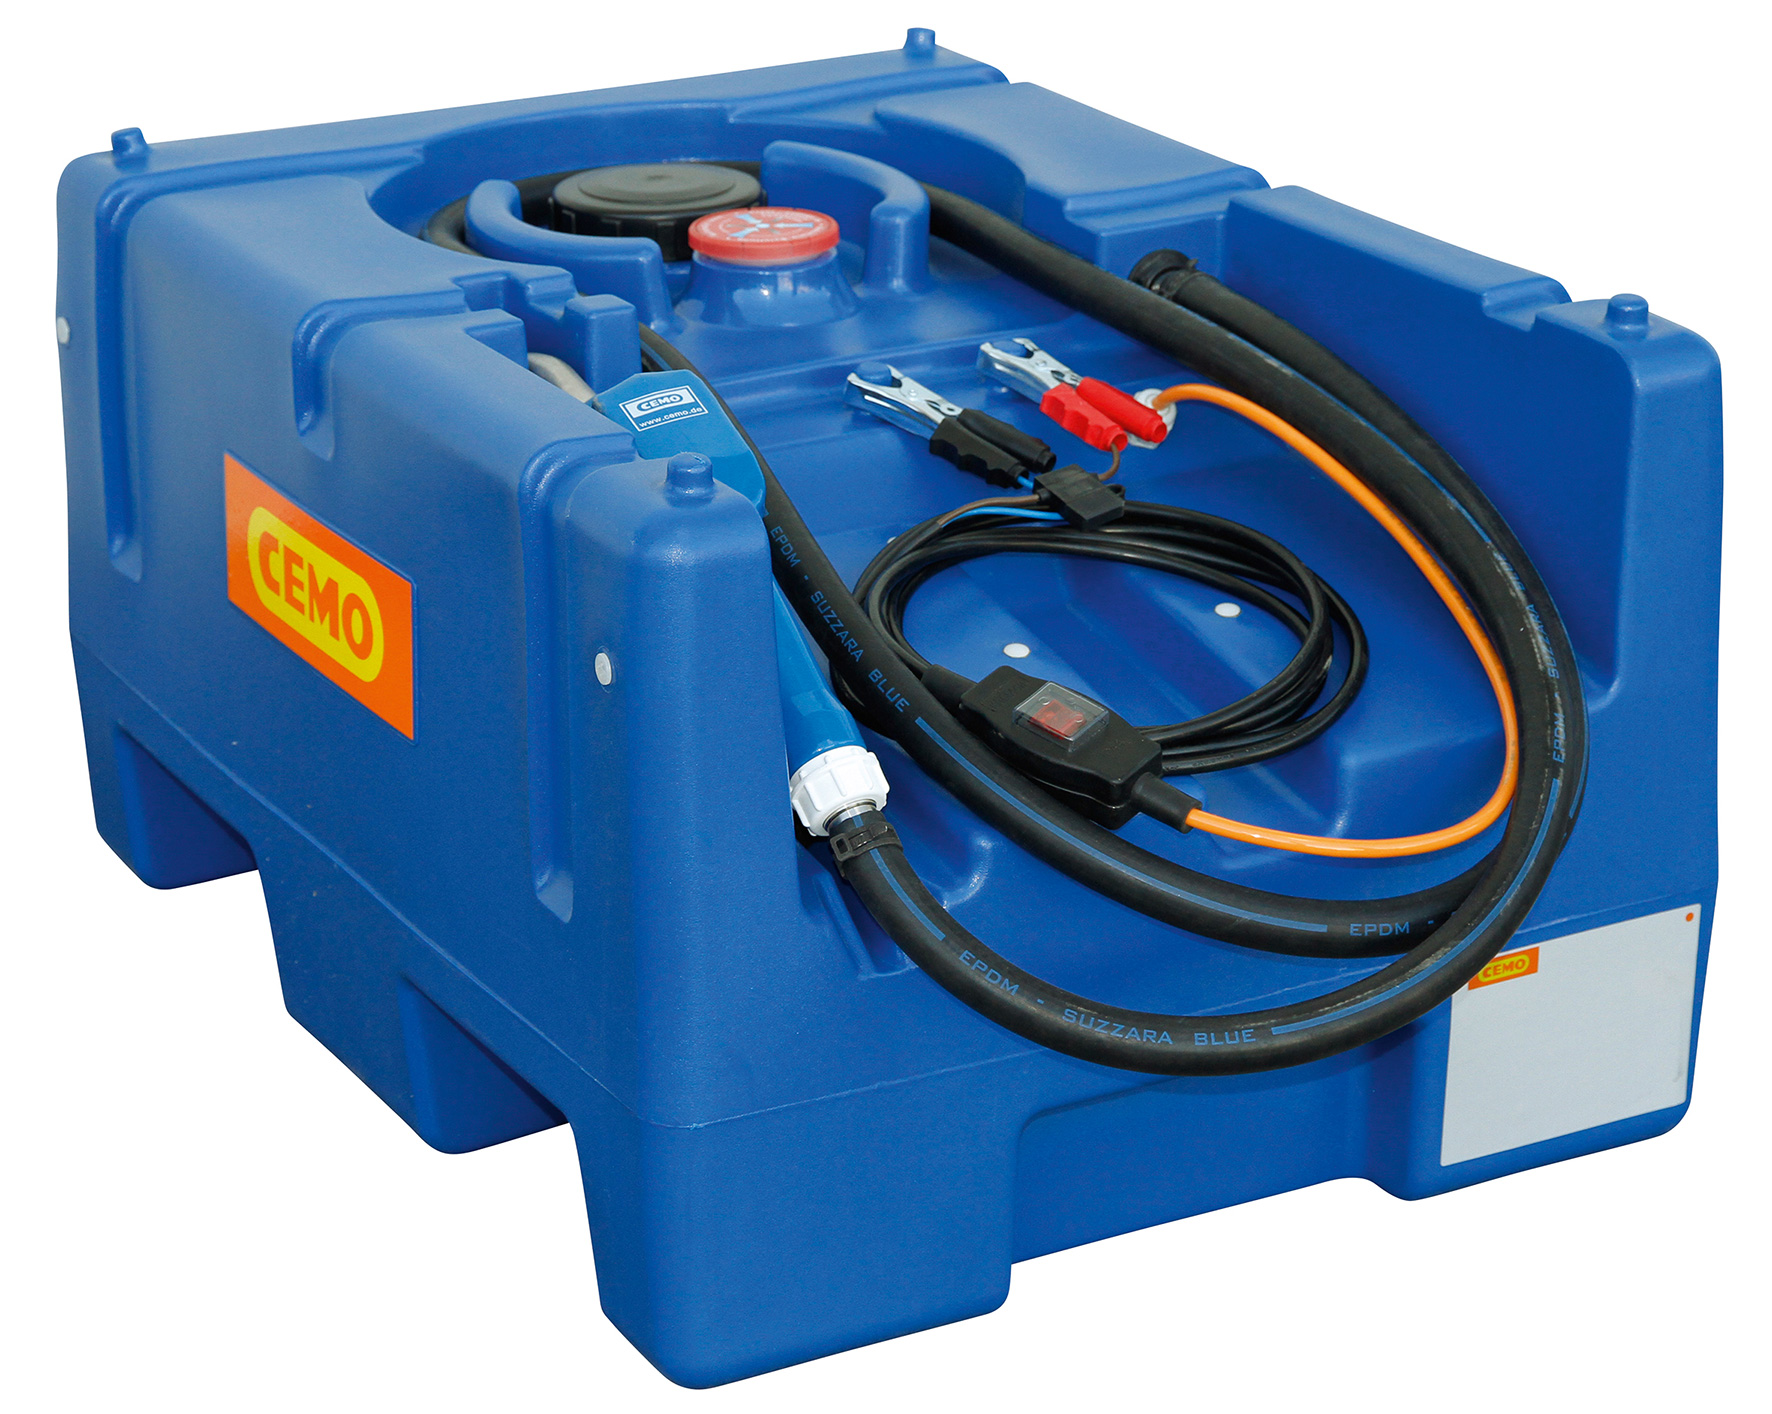 Beispiel Blue-Mobil Easy 125 Liter mit Elektropumpe CENTRI SP30